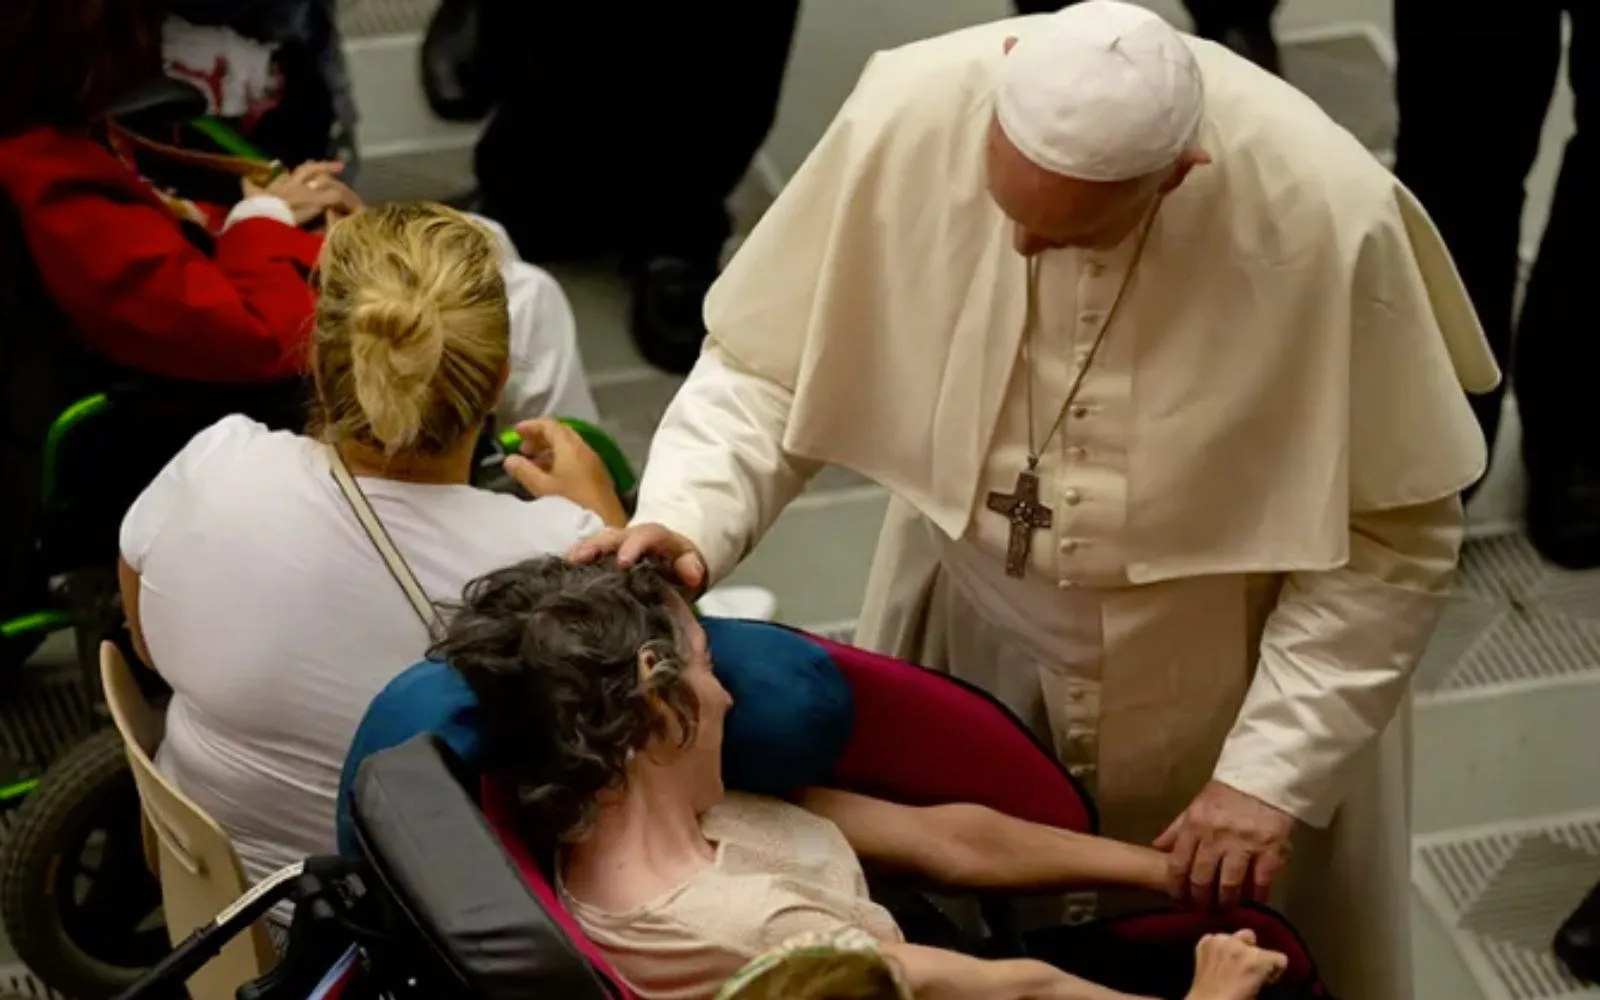 Imagen referencial / El Papa Francisco bendice a una persona enferma en el Vaticano.?w=200&h=150